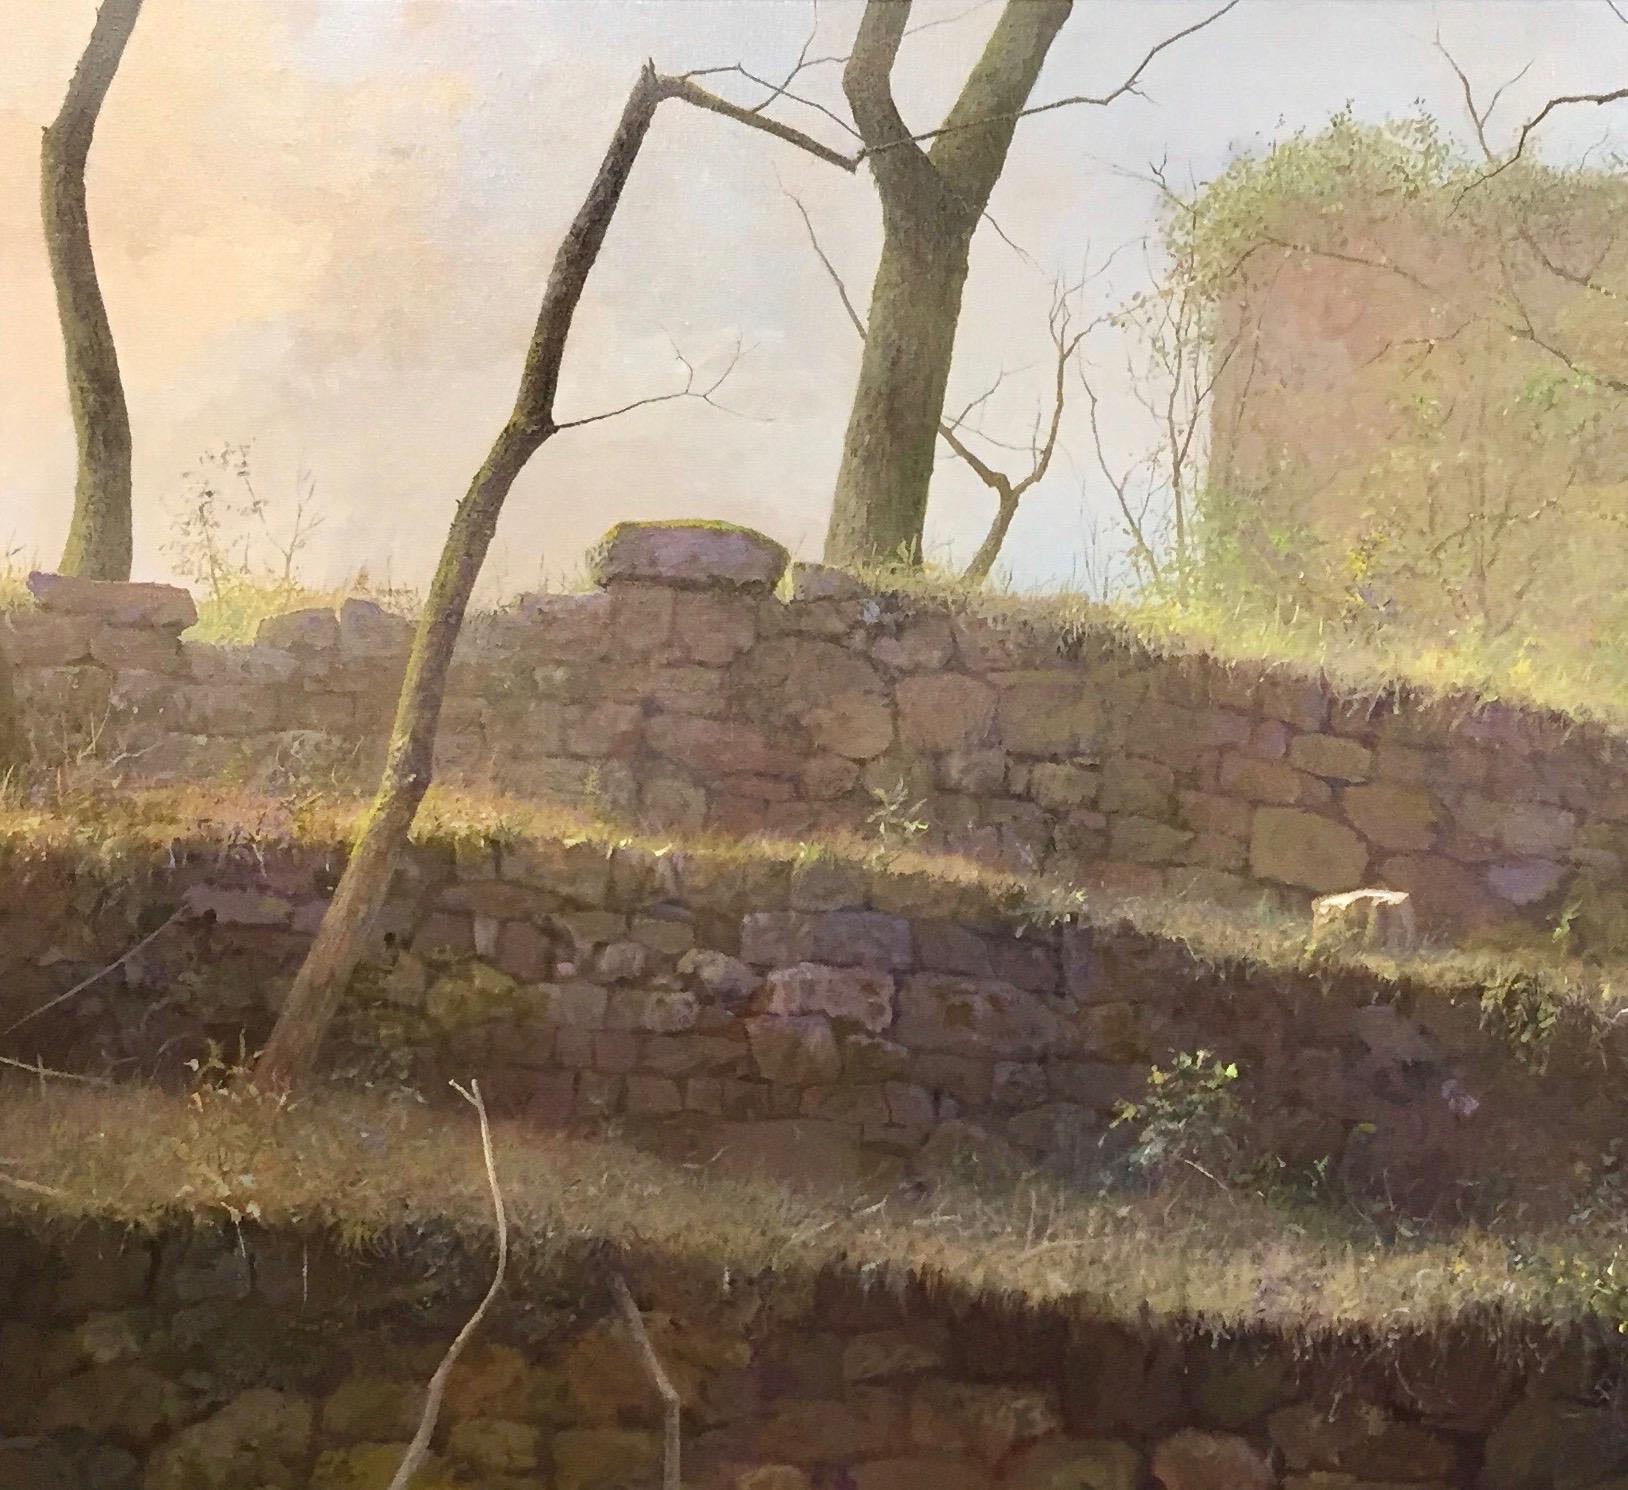 Les terres au Coulet - Peinture de paysage contemporaine du 21e siècle dans l'Ardeche - Contemporain Painting par Peter Durieux